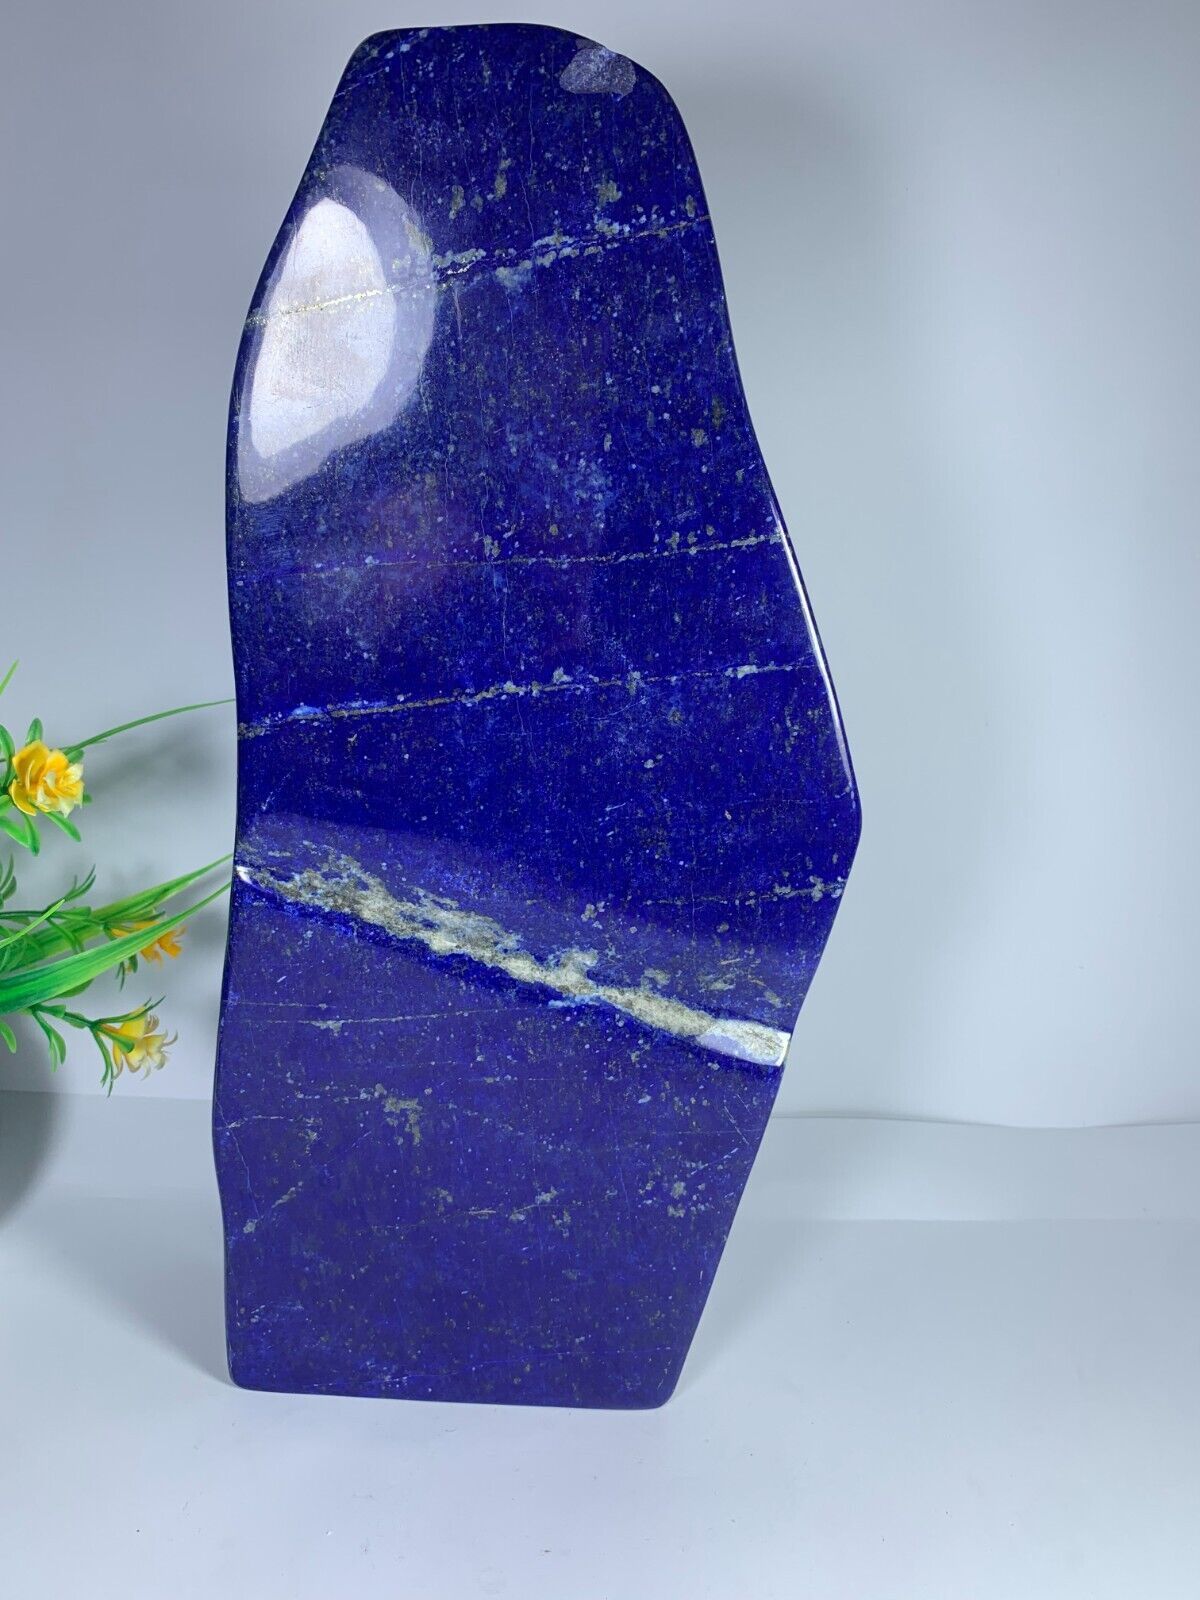 5.4kg Lapis Lazuli Freeform Polished Rough Tumble Healing Crystal Specimen Stone